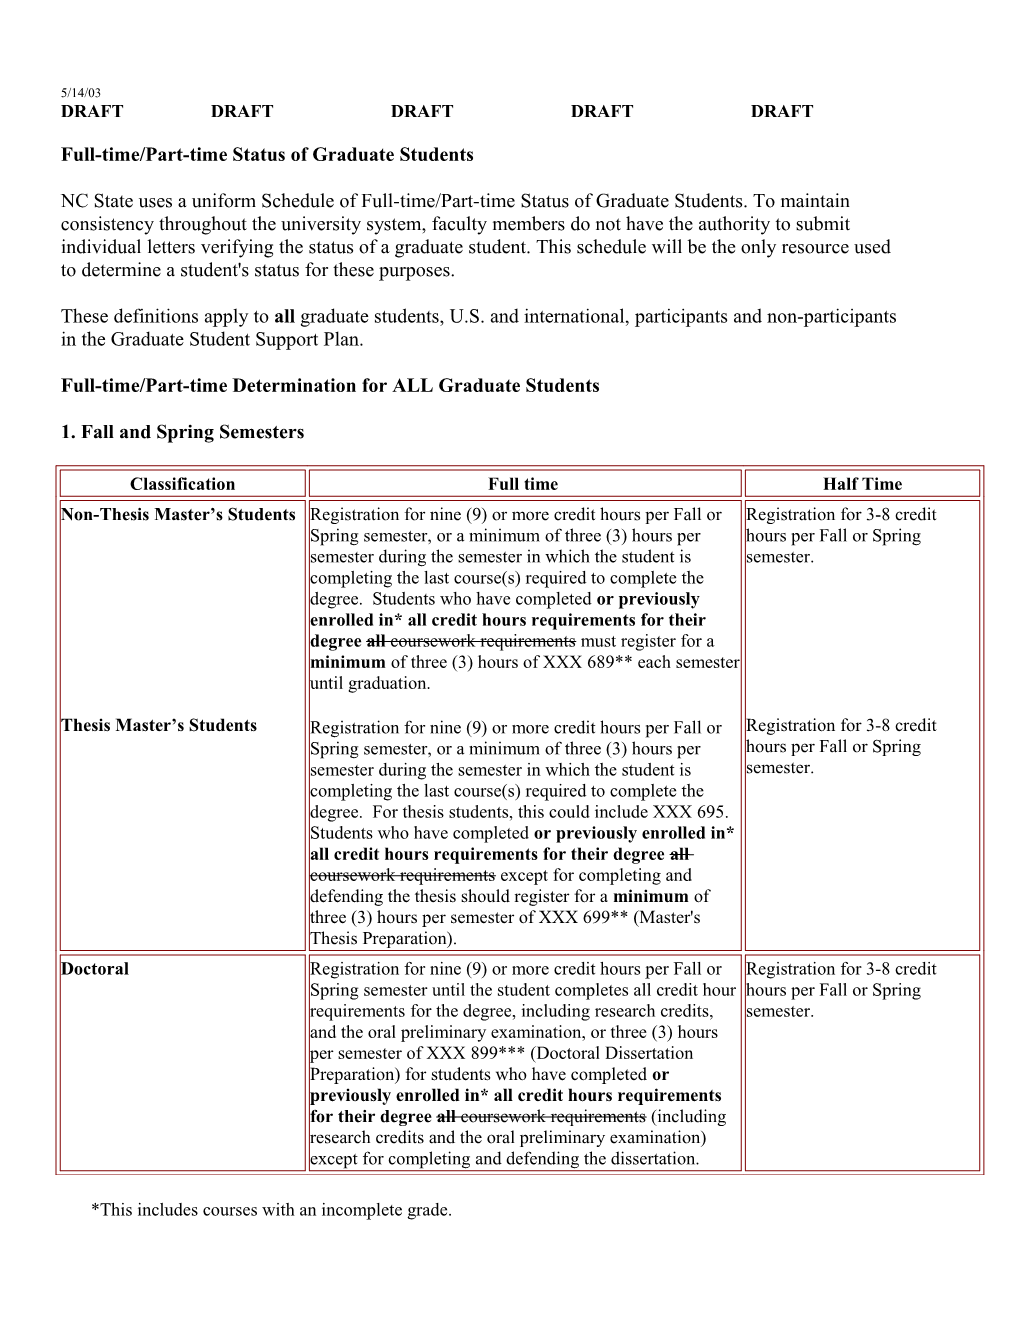 Administrative Board Agenda Items